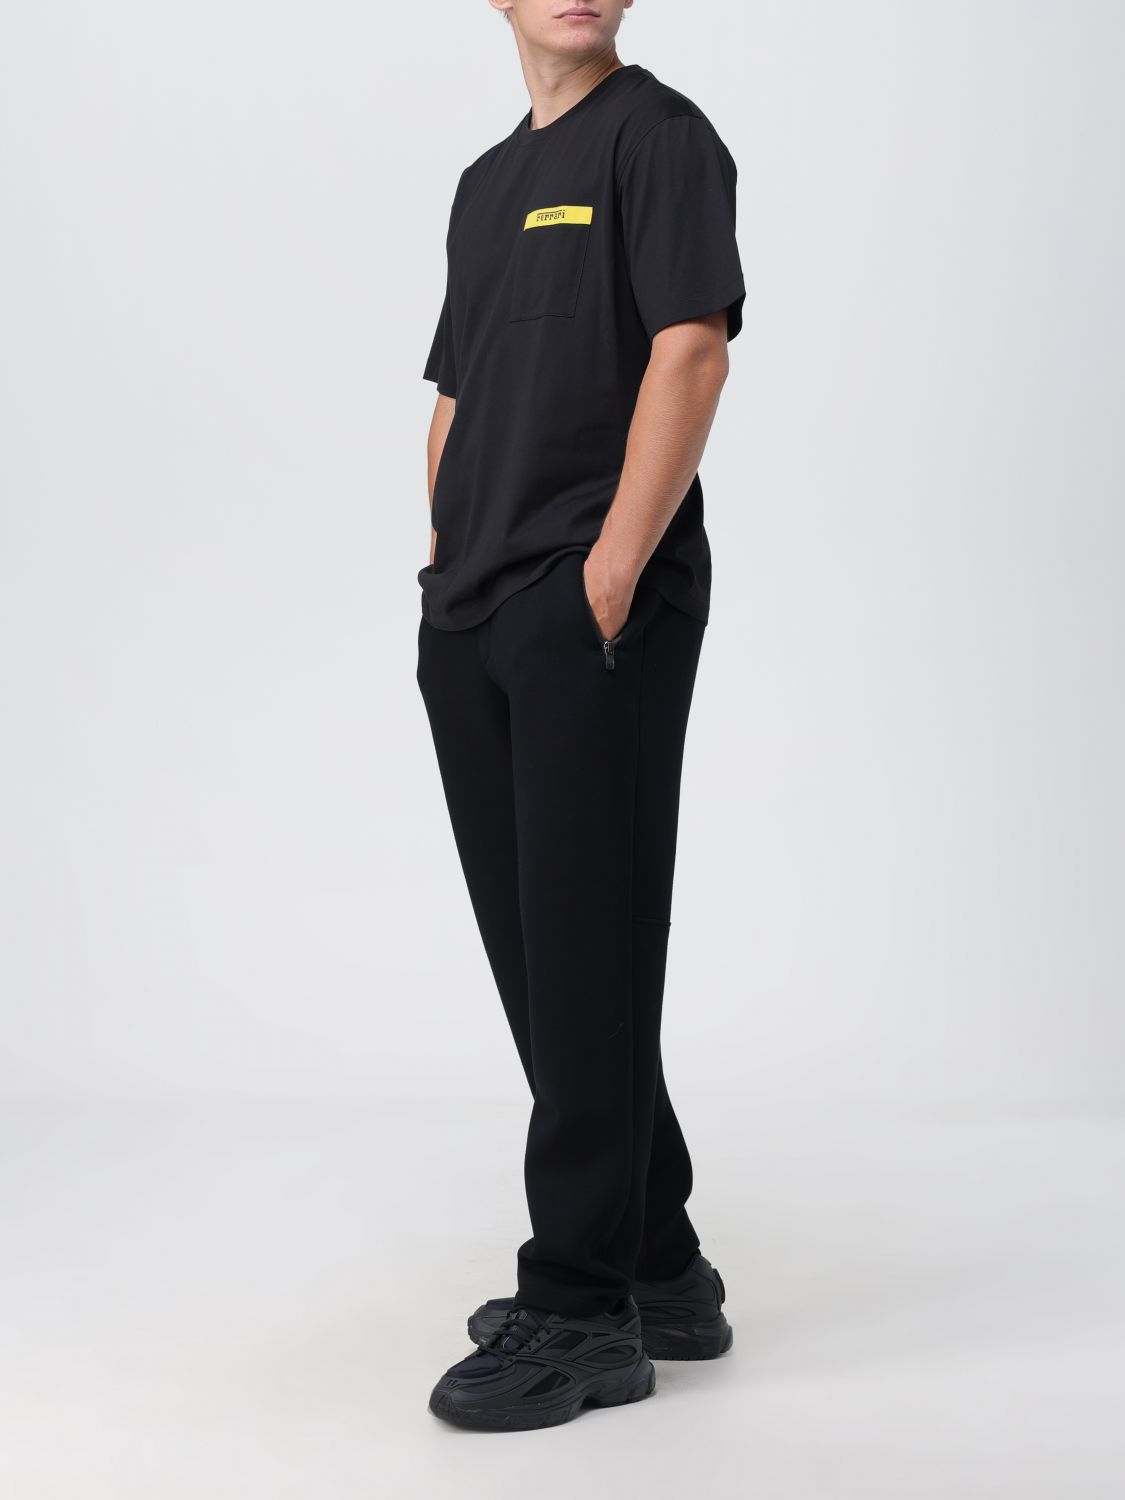 FERRARI: Camiseta para hombre, Negro  Camiseta Ferrari 47825 en línea en